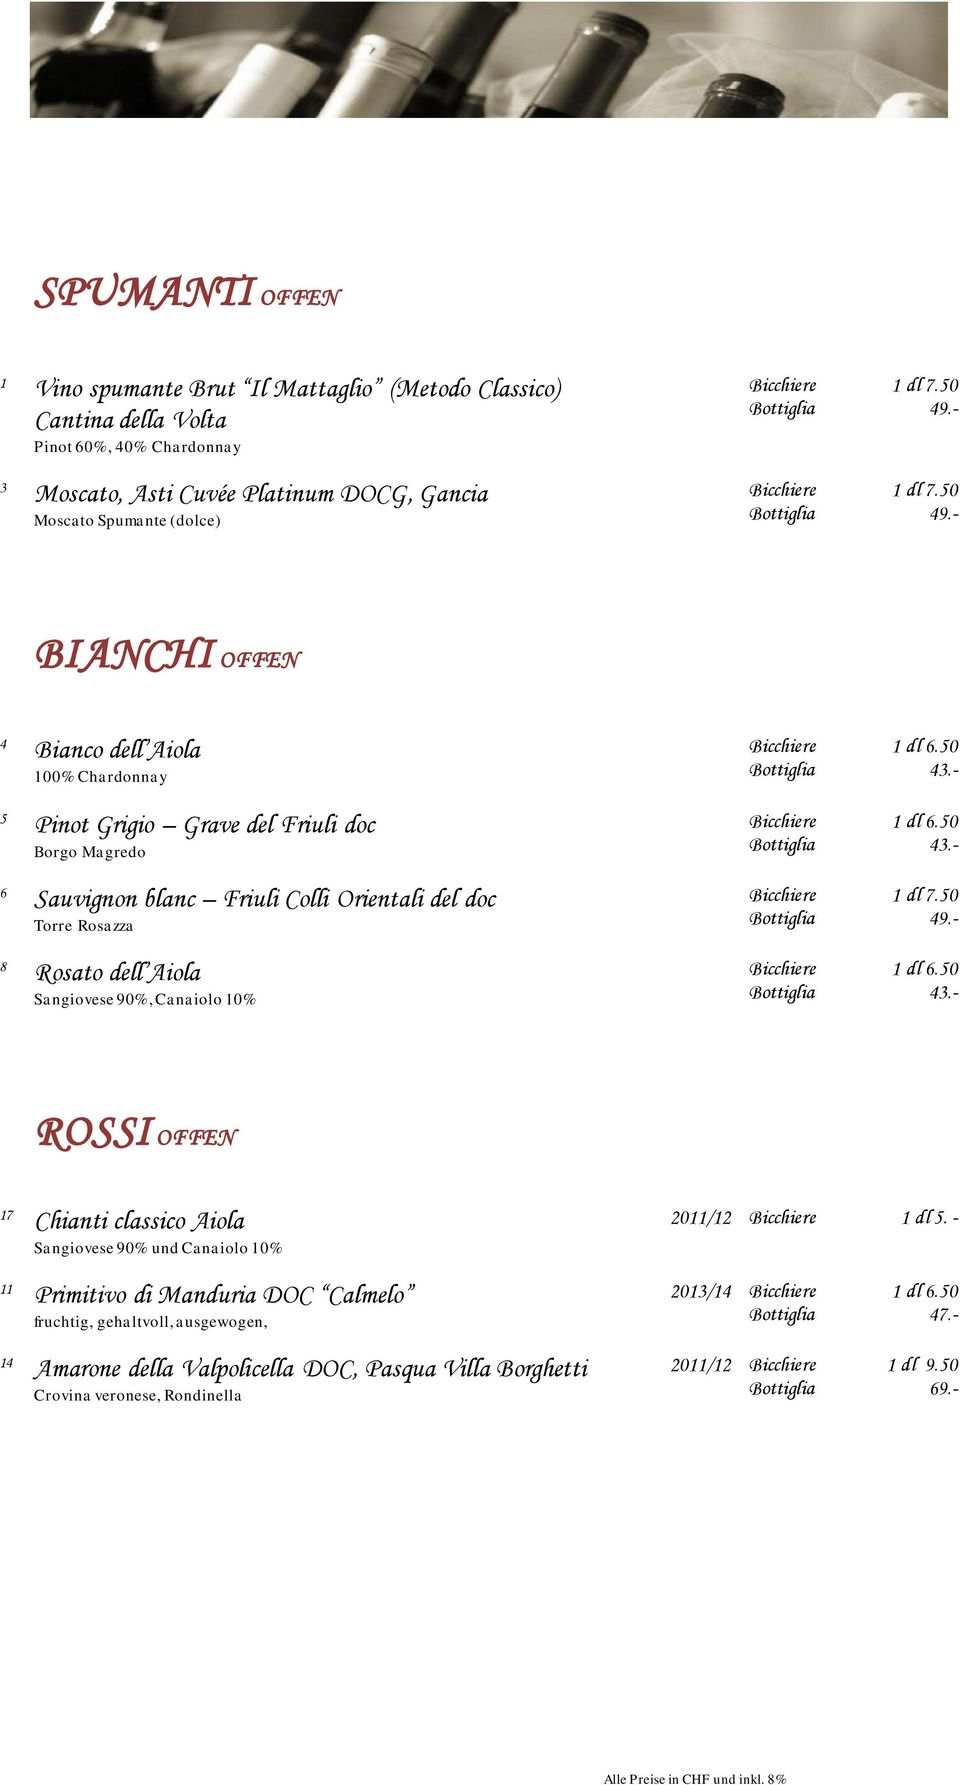 50 olgiati BIANCHI OFFEN 4 Bianco dell Aiola 100% Chardonnay 5 Pinot Grigio Grave del Friuli doc Borgo Magredo 6 Sauvignon blanc Friuli Colli Orientali del doc Torre Rosazza 8 Rosato dell Aiola